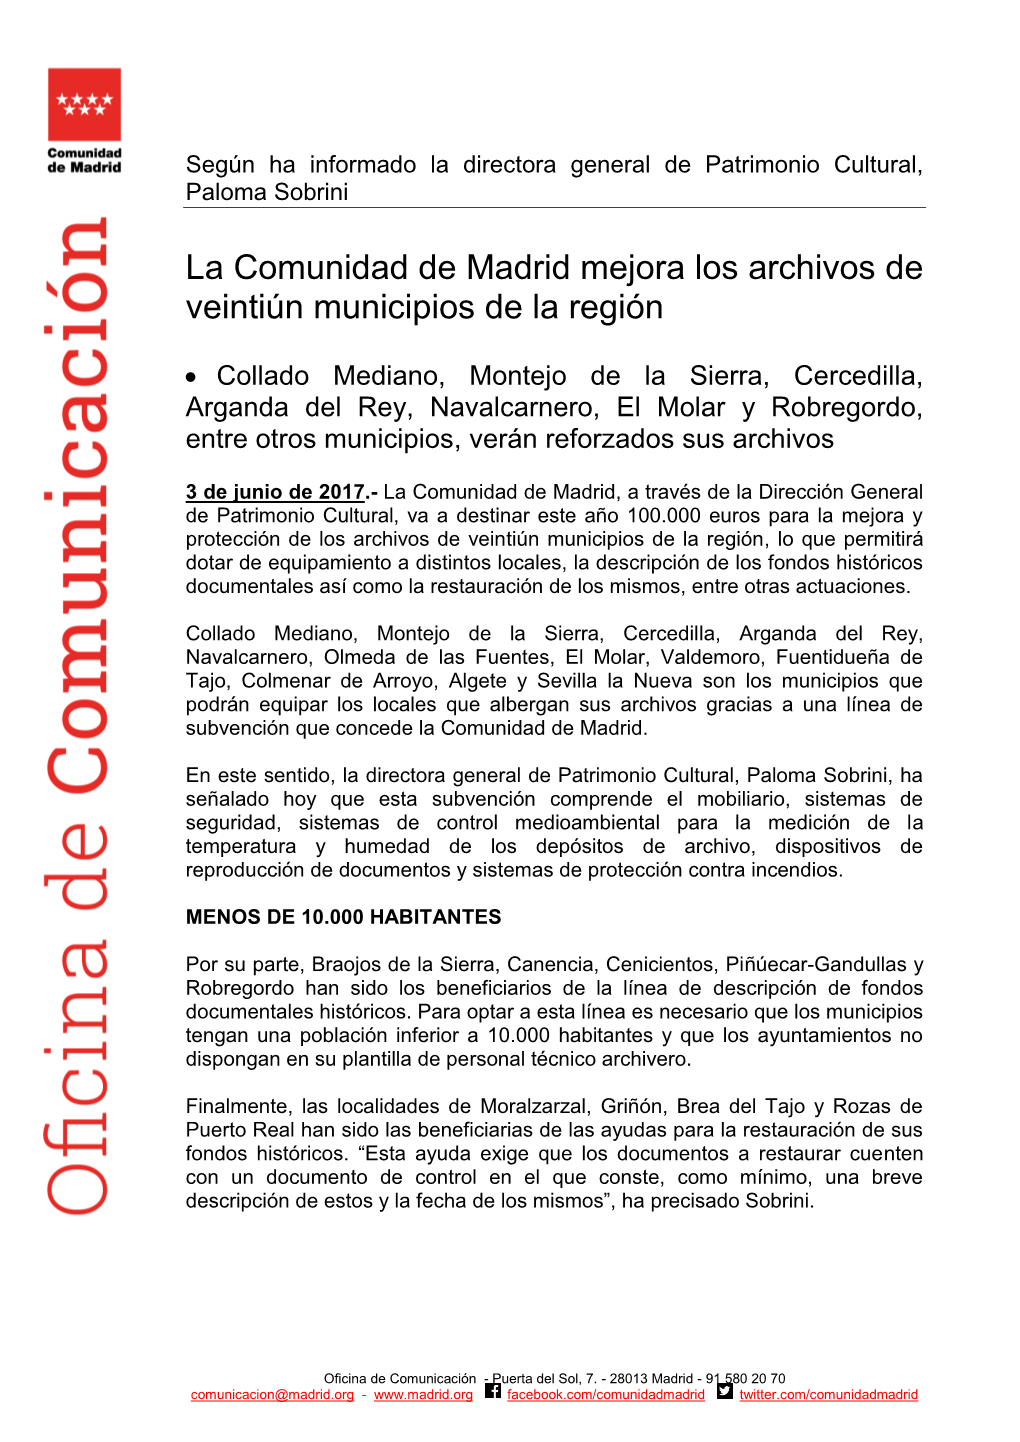 La Comunidad De Madrid Mejora Los Archivos De Veintiún Municipios De La Región